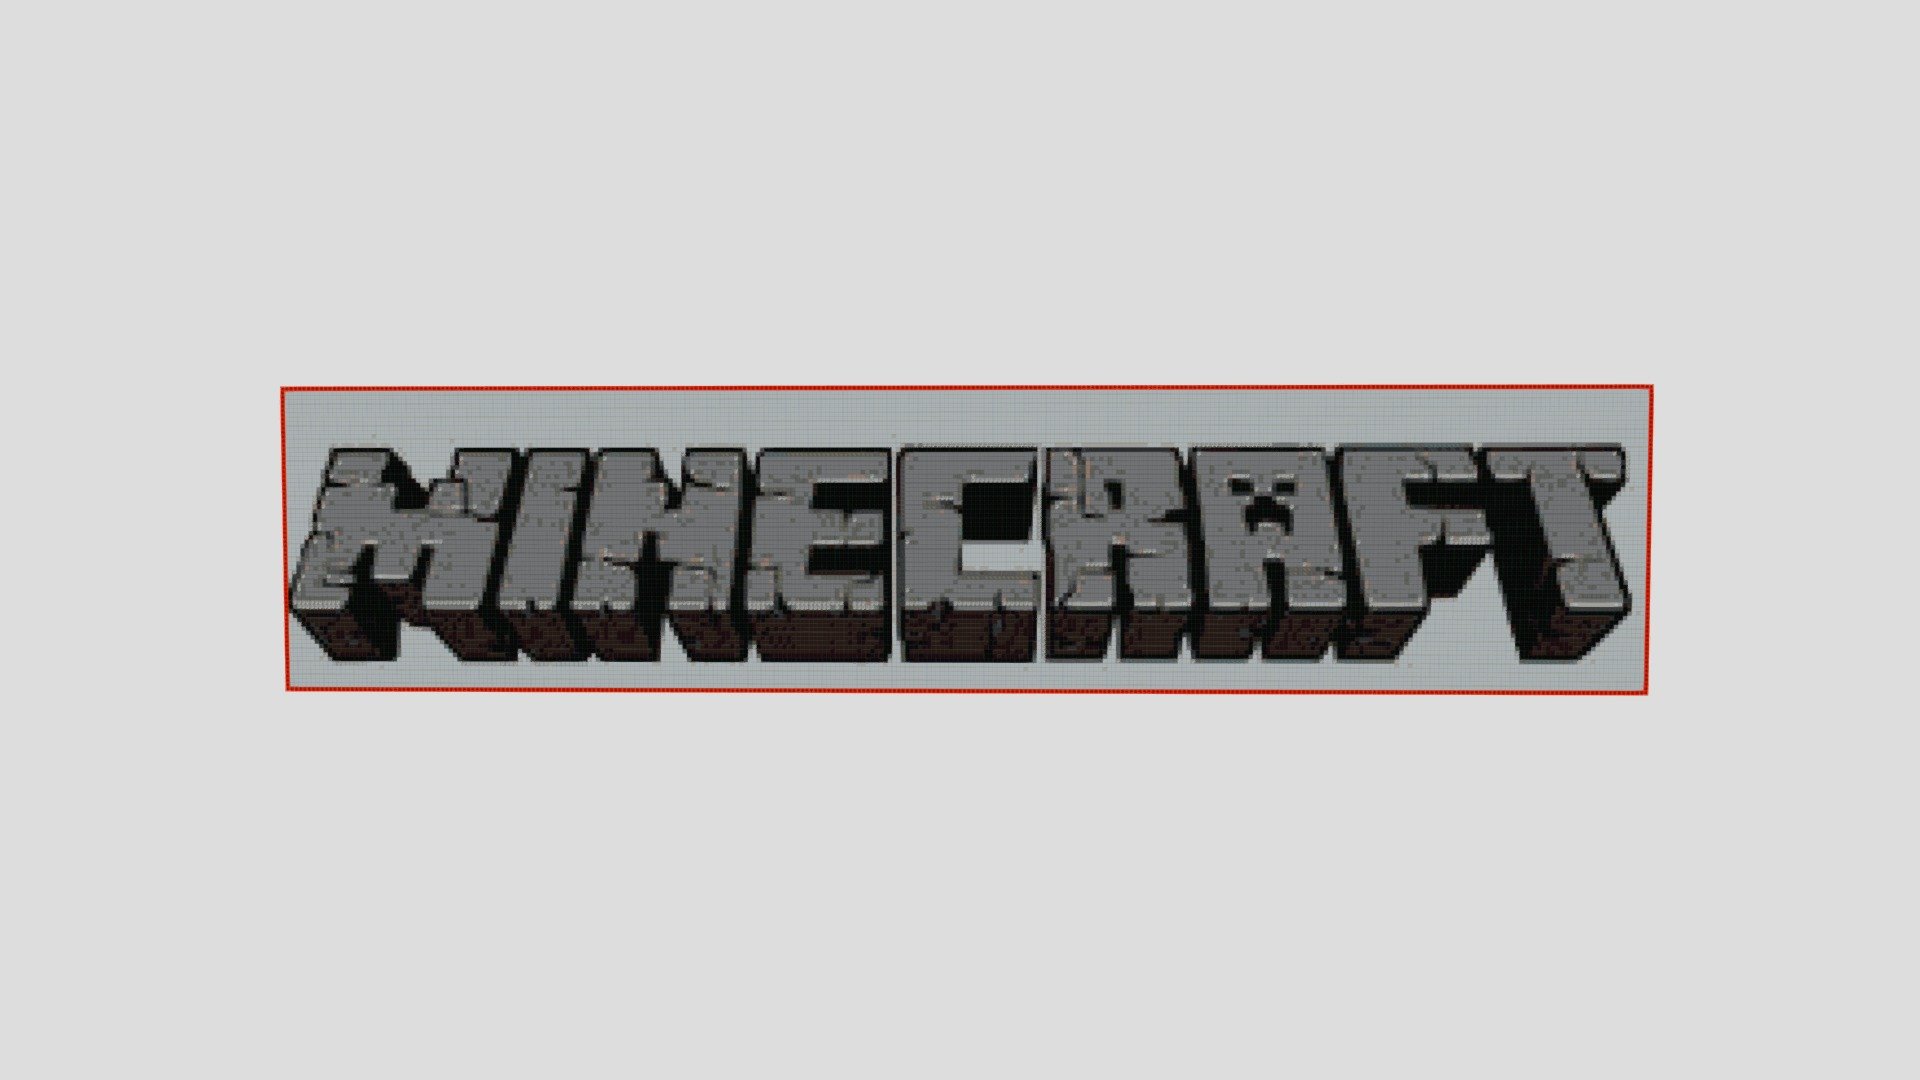 minecraft logo